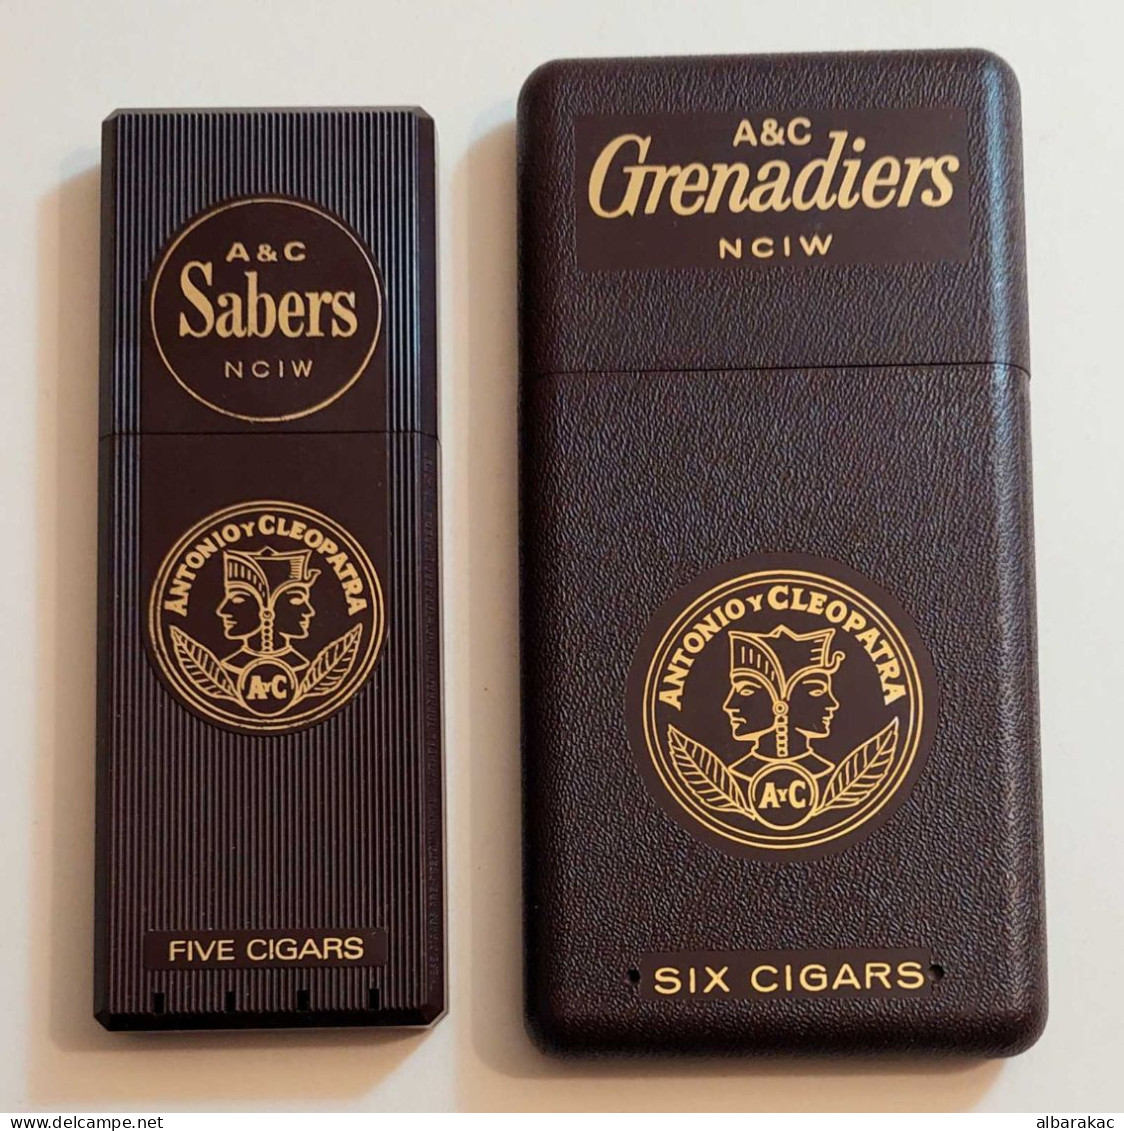 USA Ciagrette Grenadiers A&C Sabers Box Plastic Case - Porta Sigarette (vuoti)